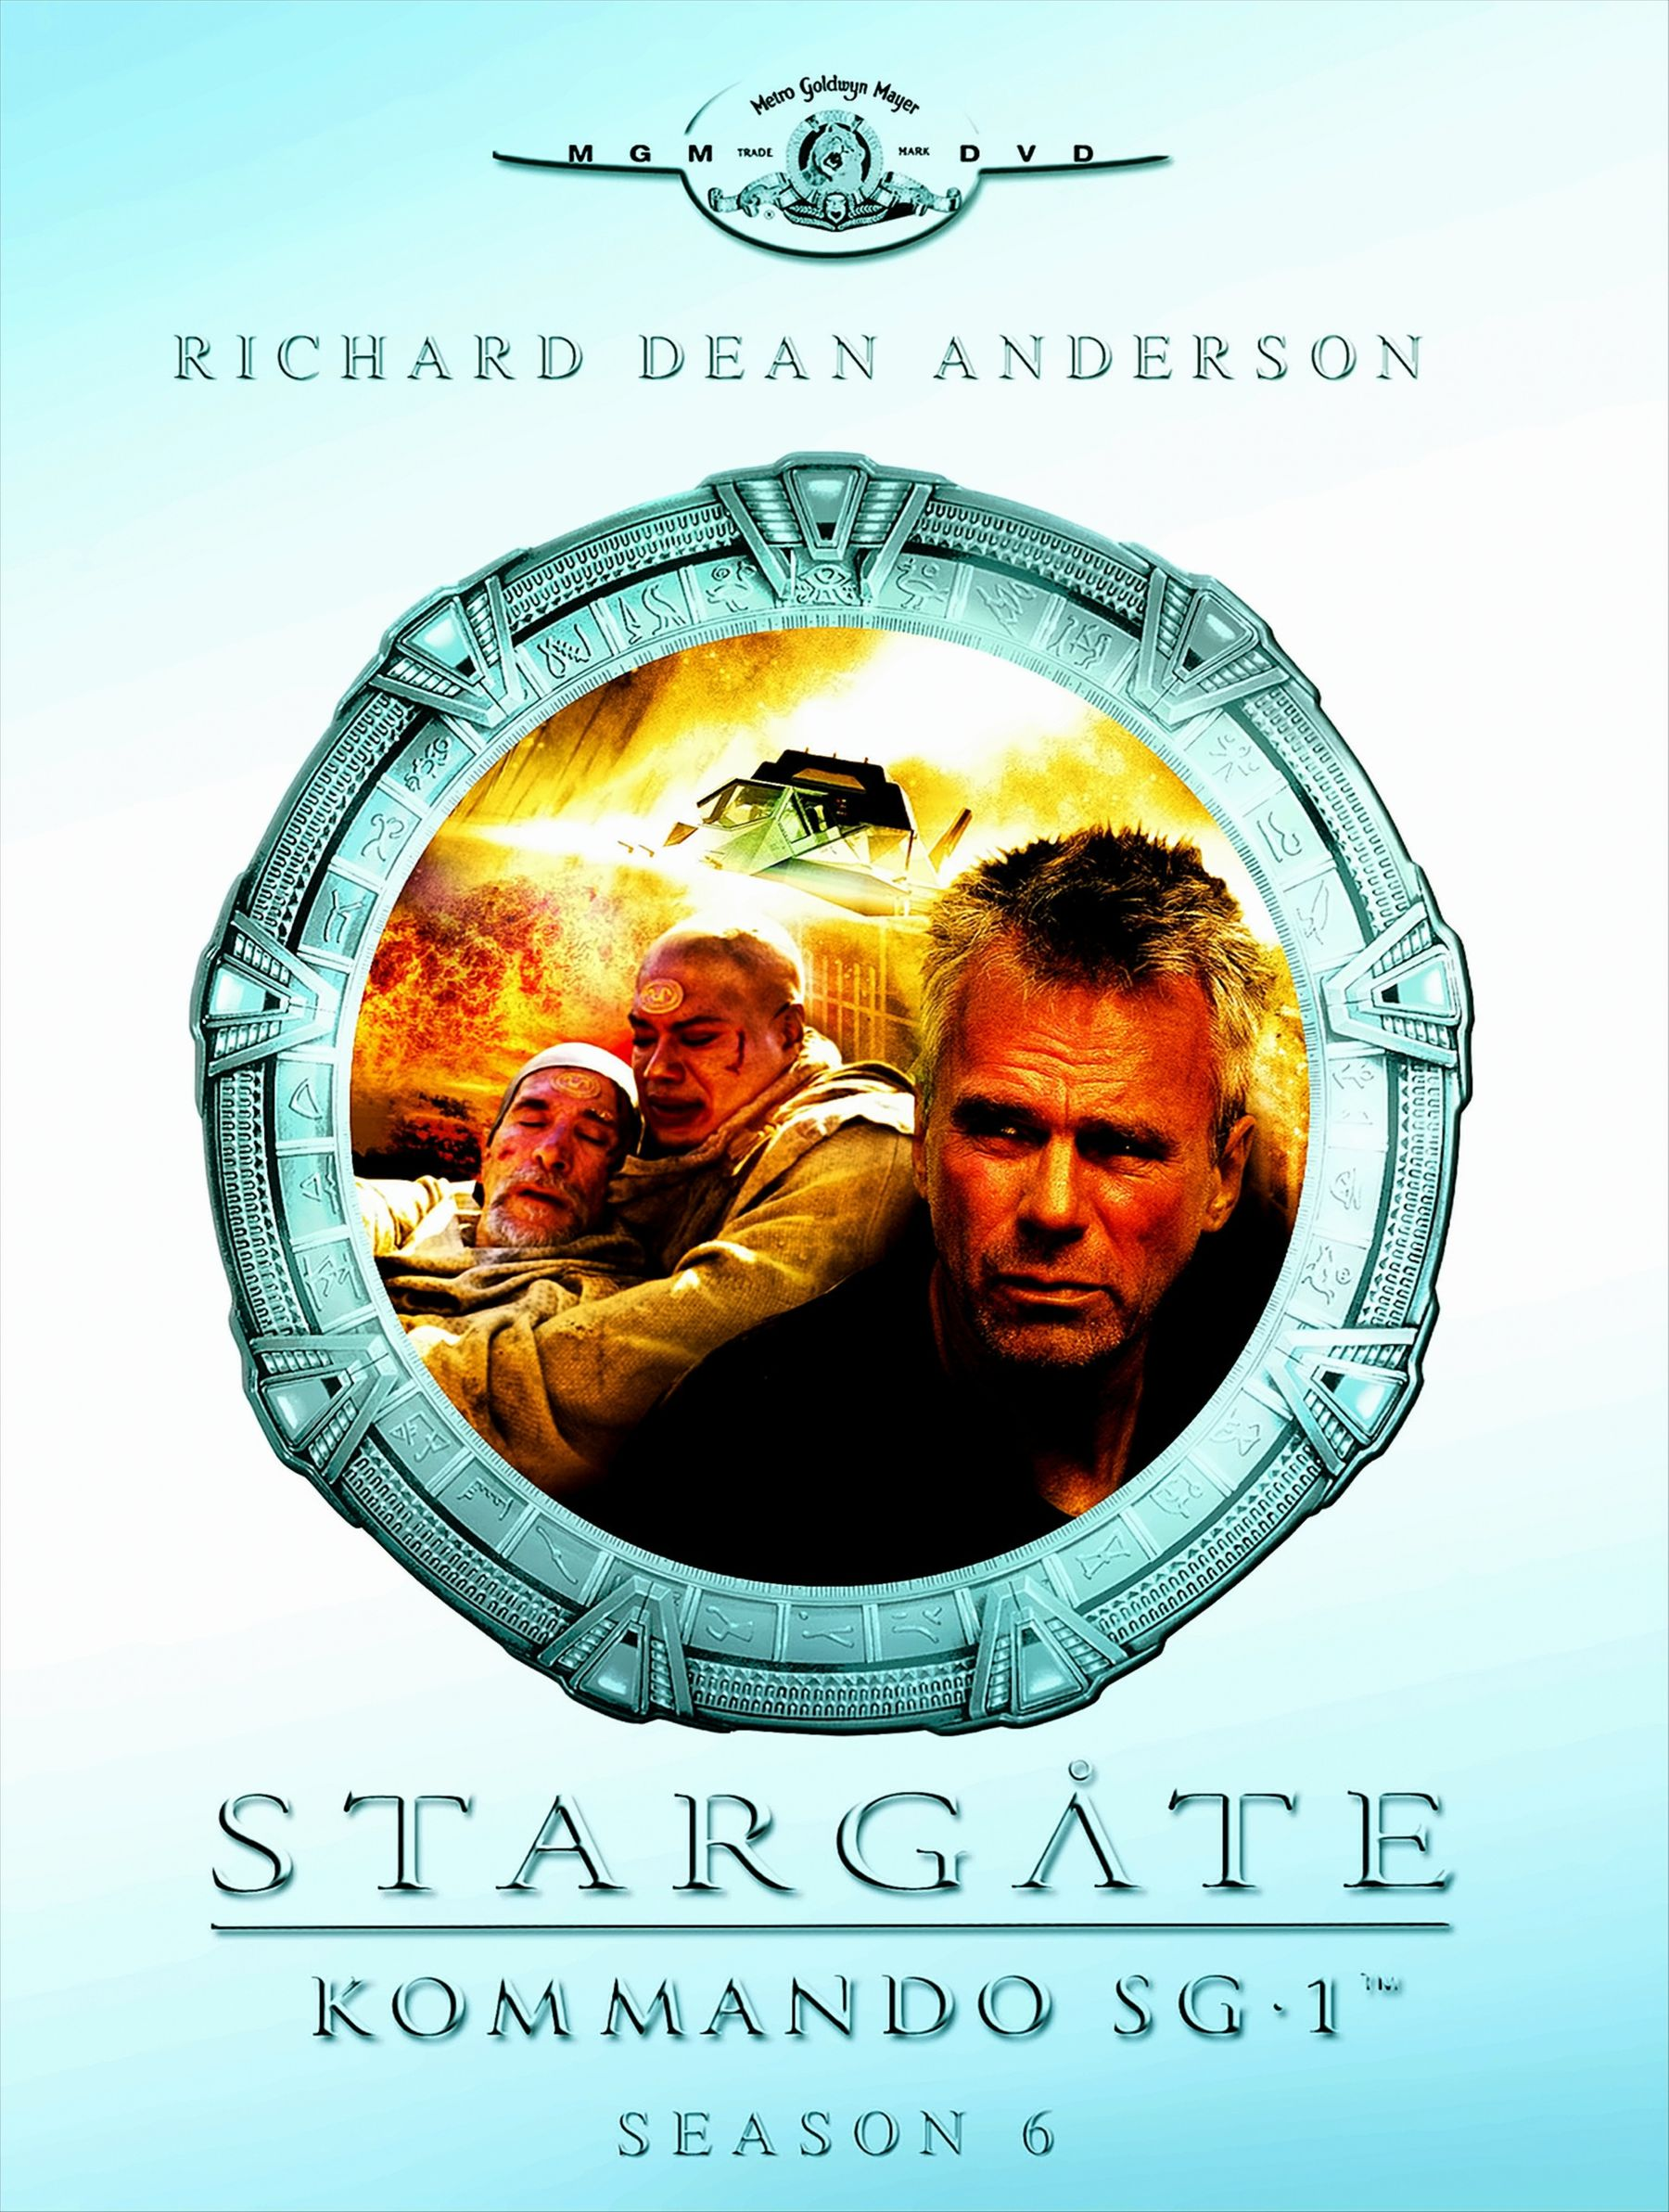 Stargate Kommando SG-1 DVD - DVDs) Season (6 06